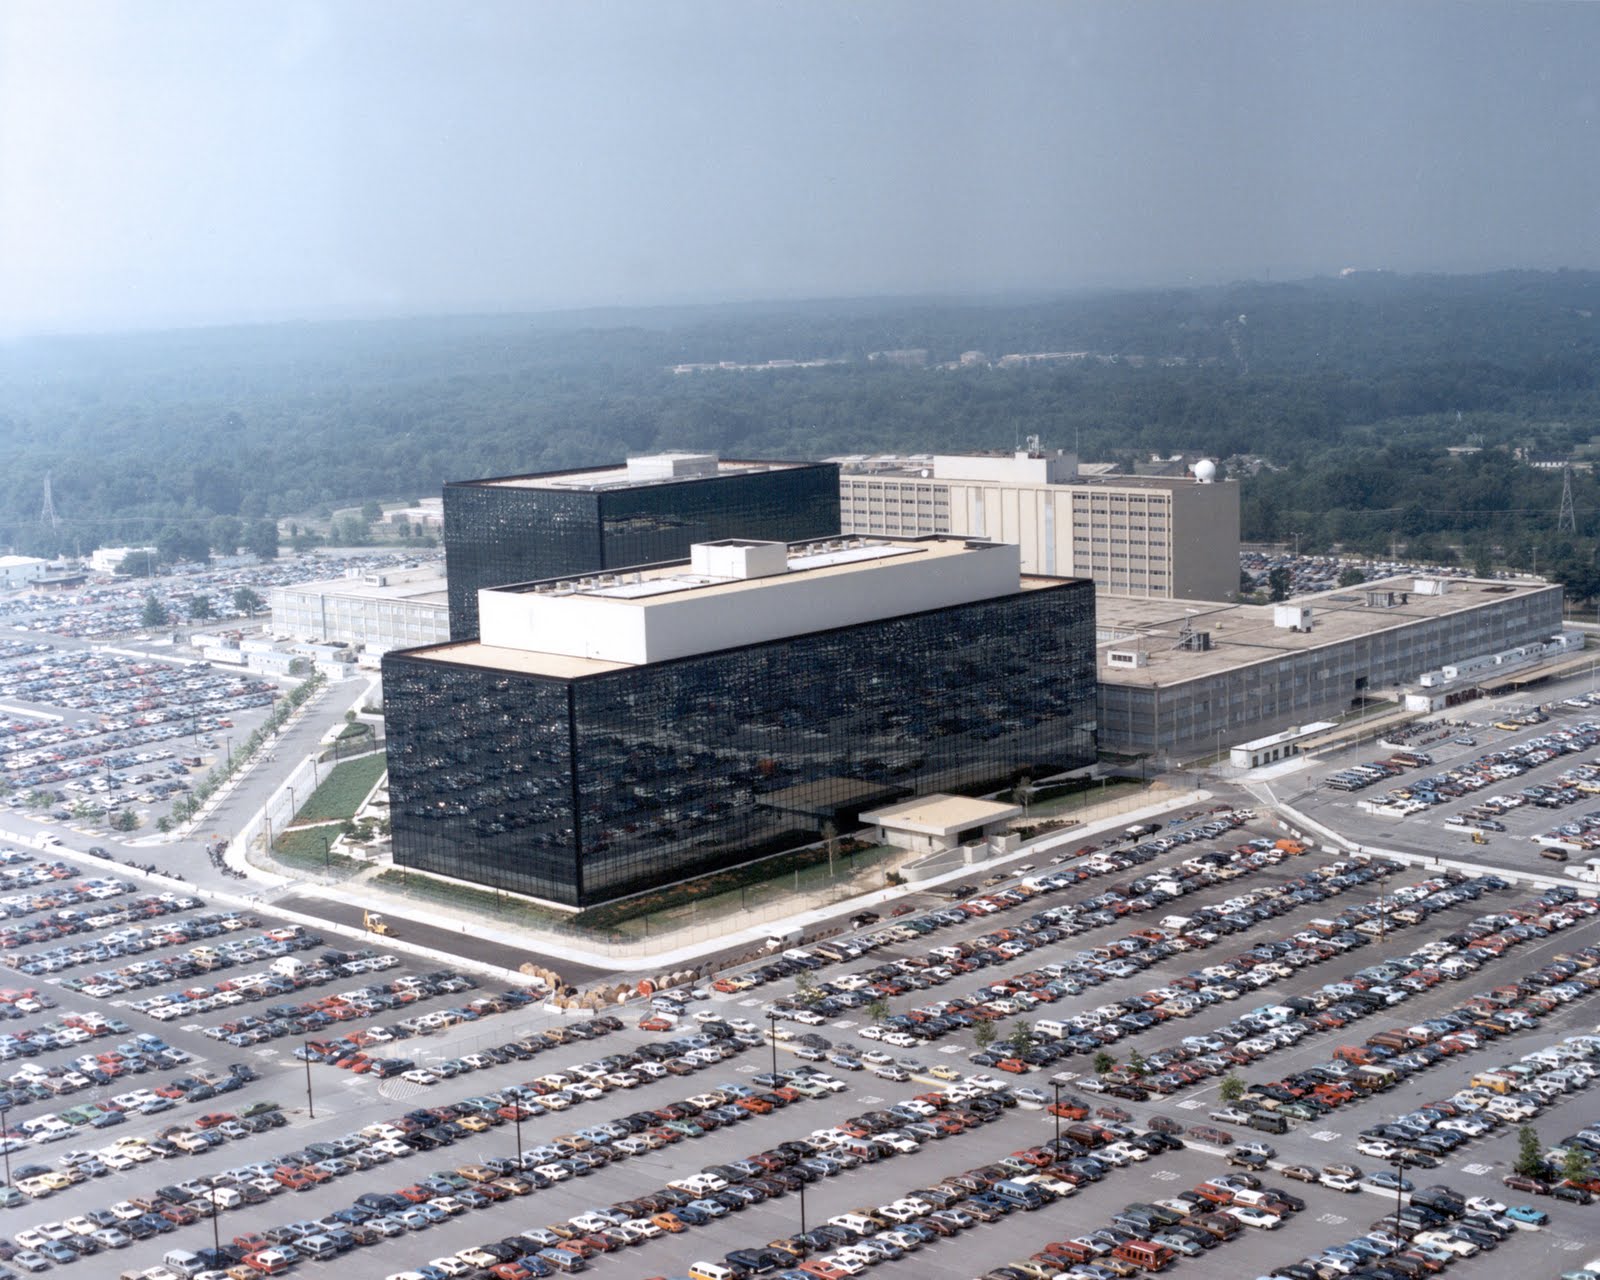 La NSA serait capable de surveiller les disques durs de millions d’ordinateurs dans le monde